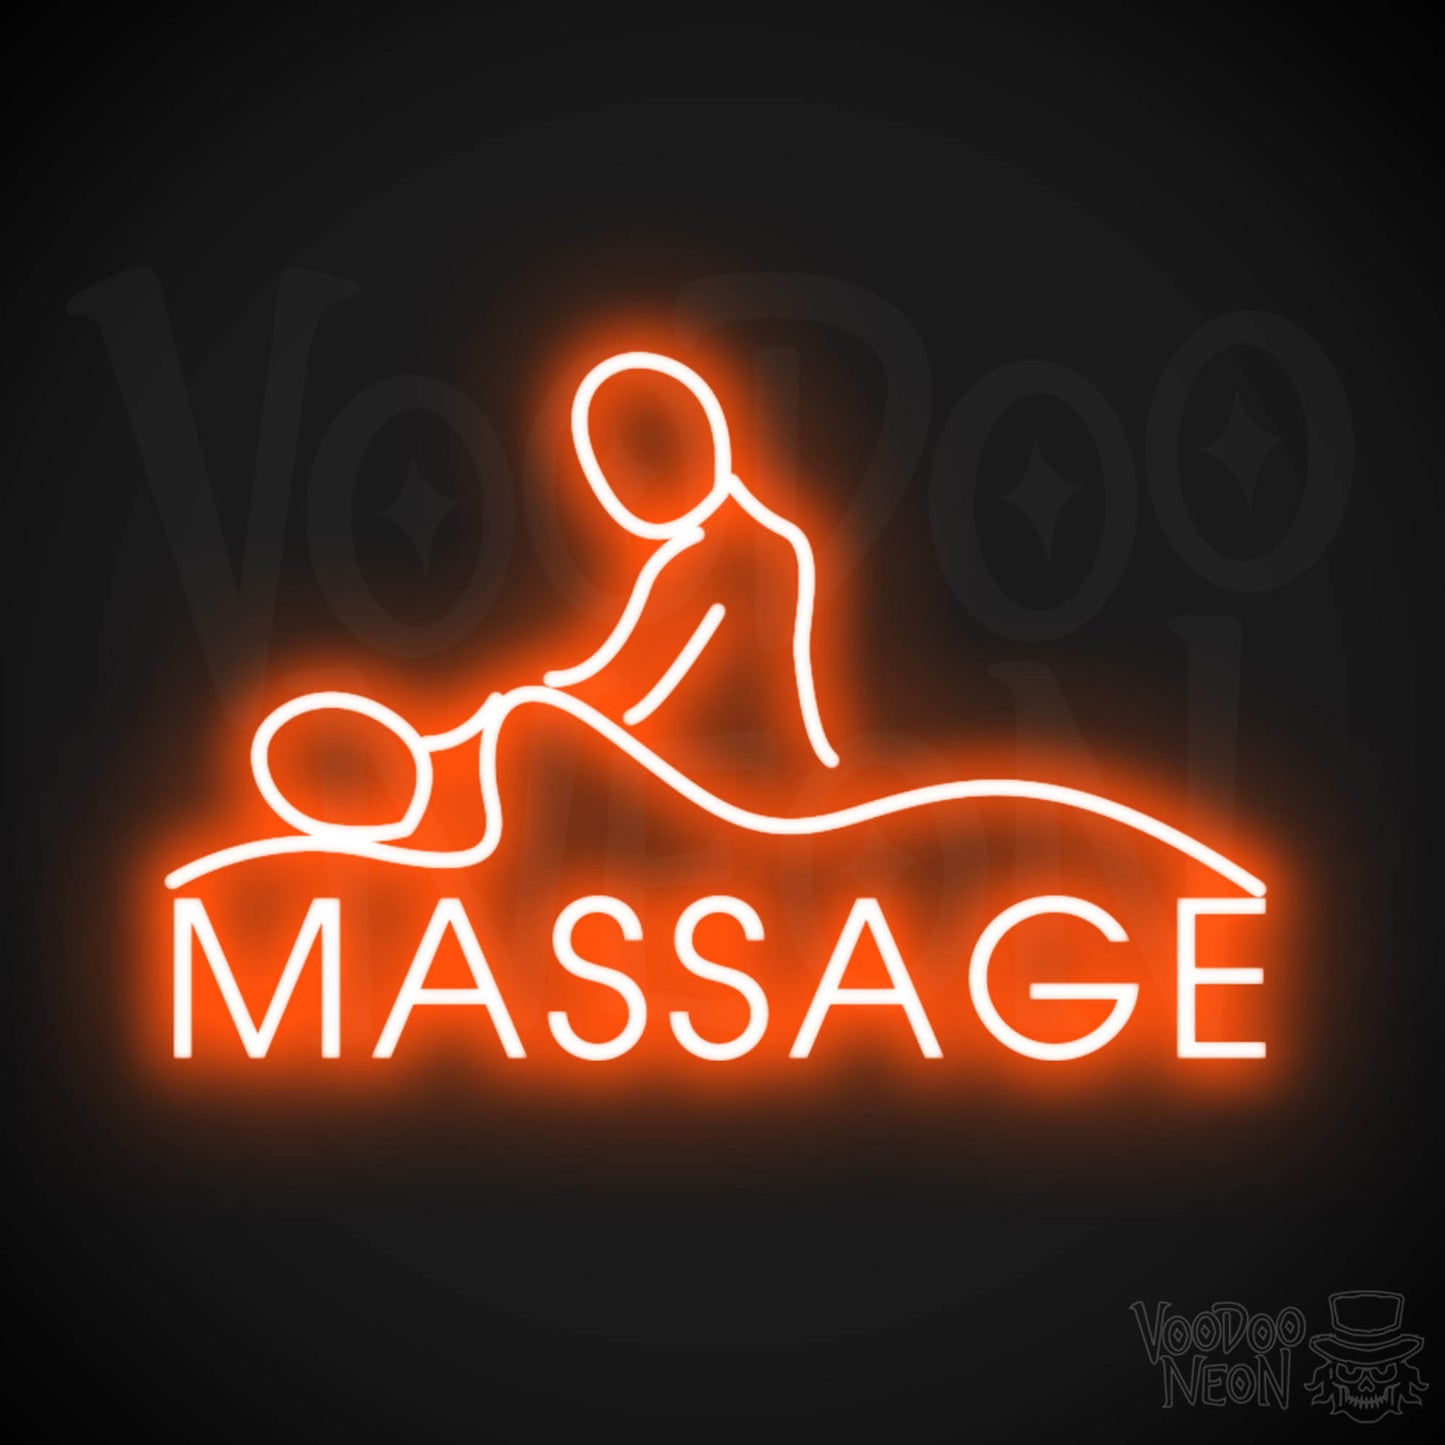 Massage Neon Sign - Neon Massage Sign - Massage Light Up Sign - Color Orange